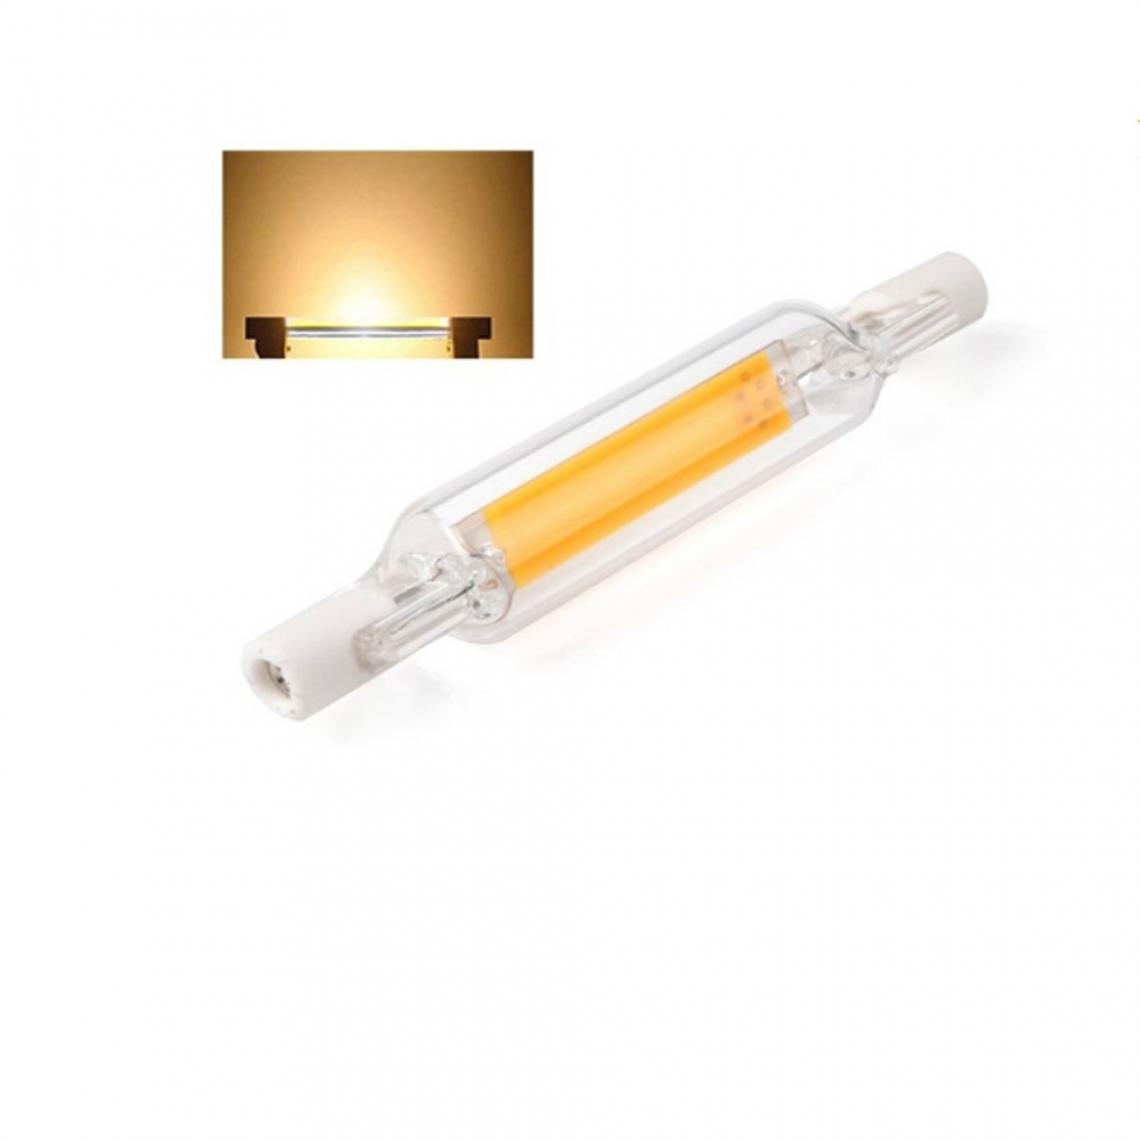 Wewoo - Tube en verre d'ampoule LED R7S 5W pour remplacer la lumière de spot halogènelongueur de la lampe 78 mmAC 220v blanc chaud - Tubes et néons